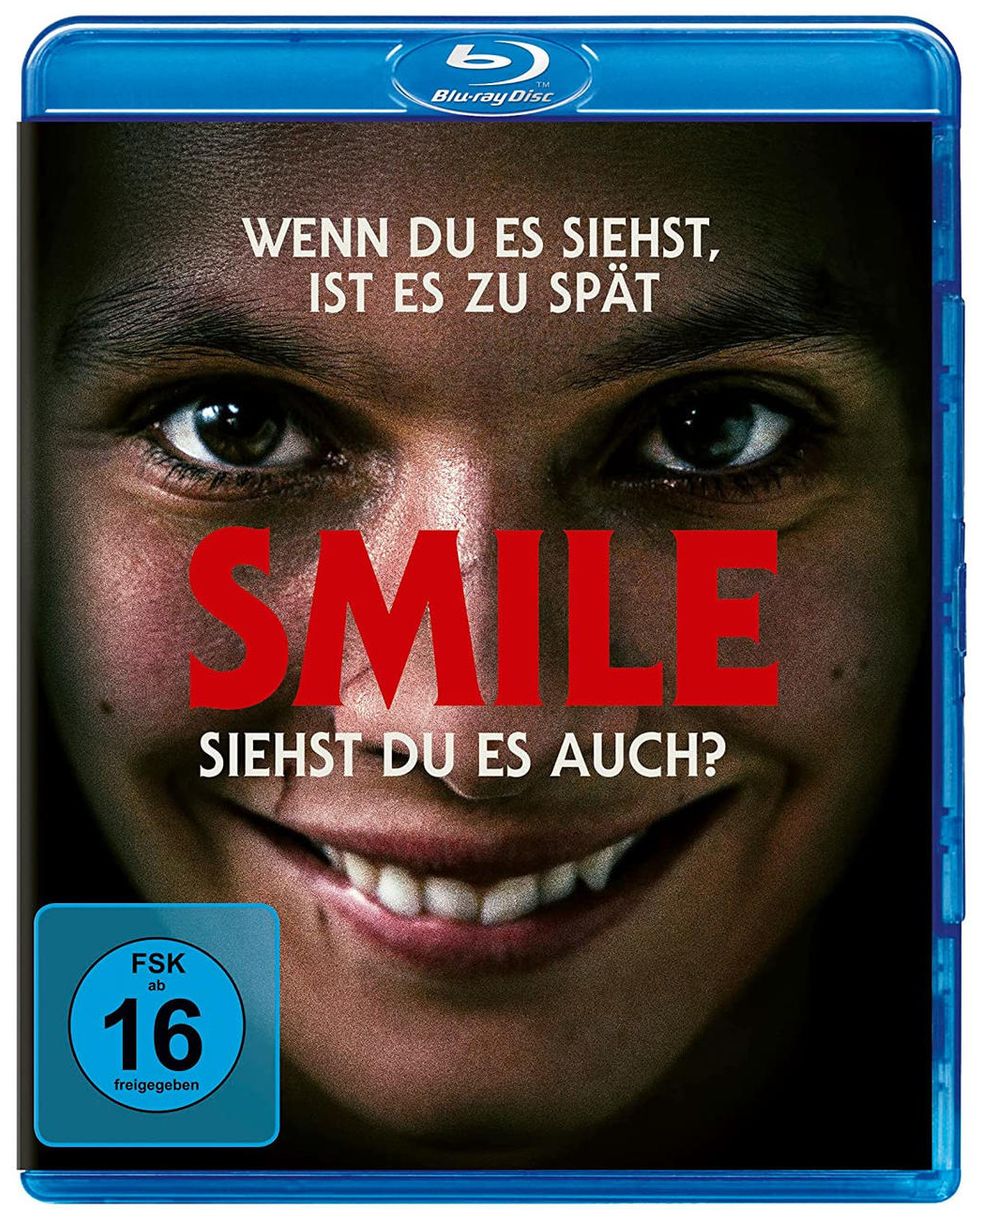 Smile - Siehst du es auch? (Blu-Ray) 